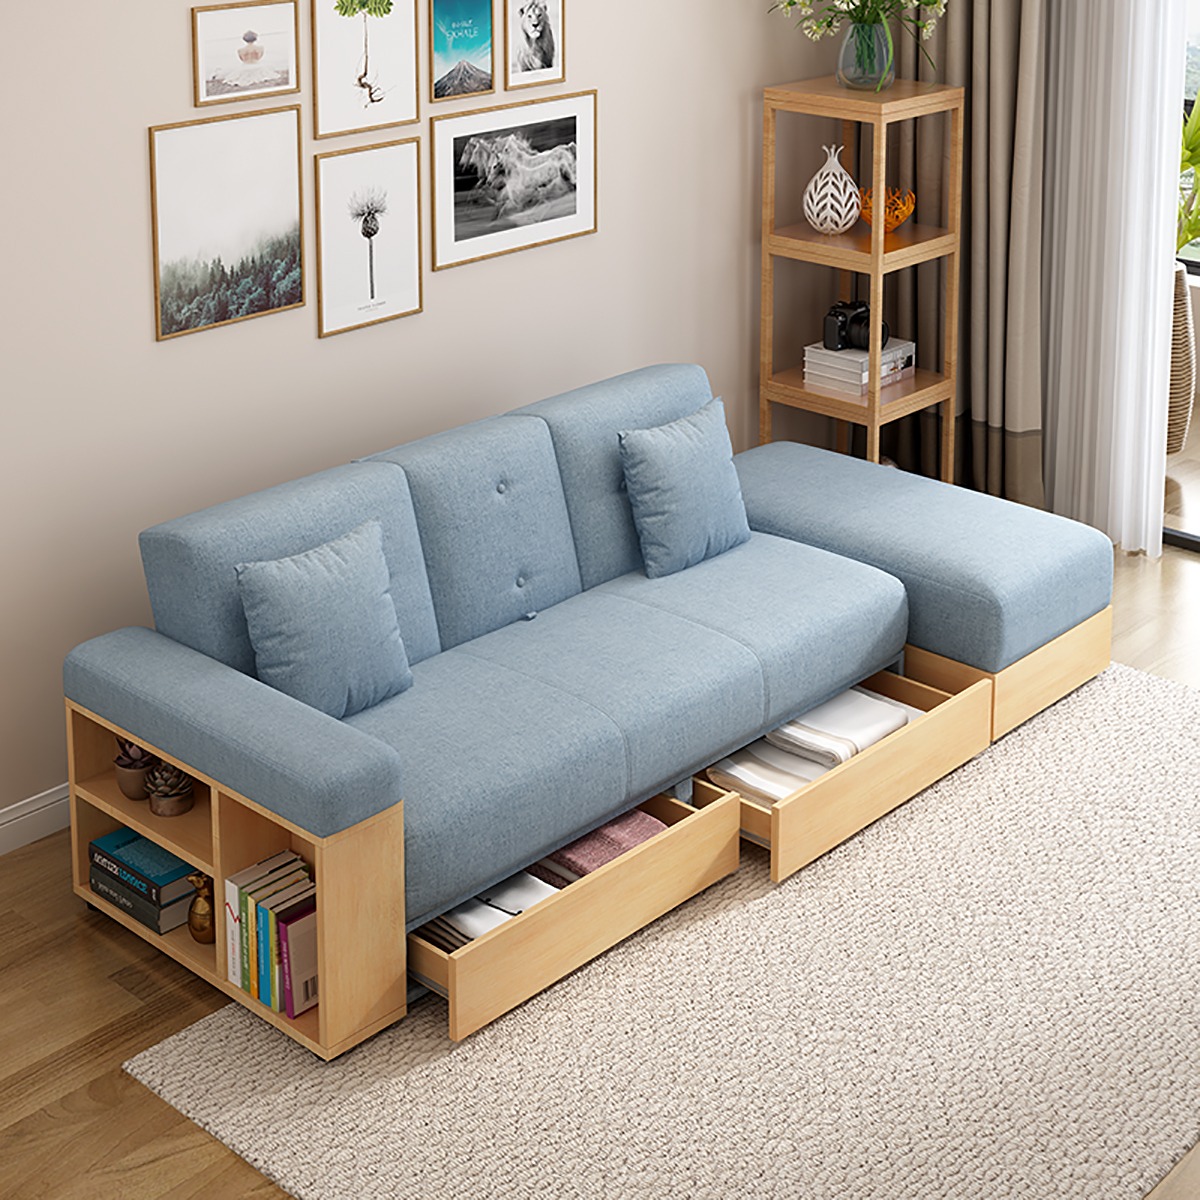 设计师说: 沙发专为小户型设计,收纳功能强大,扶手边一侧设计有储物小